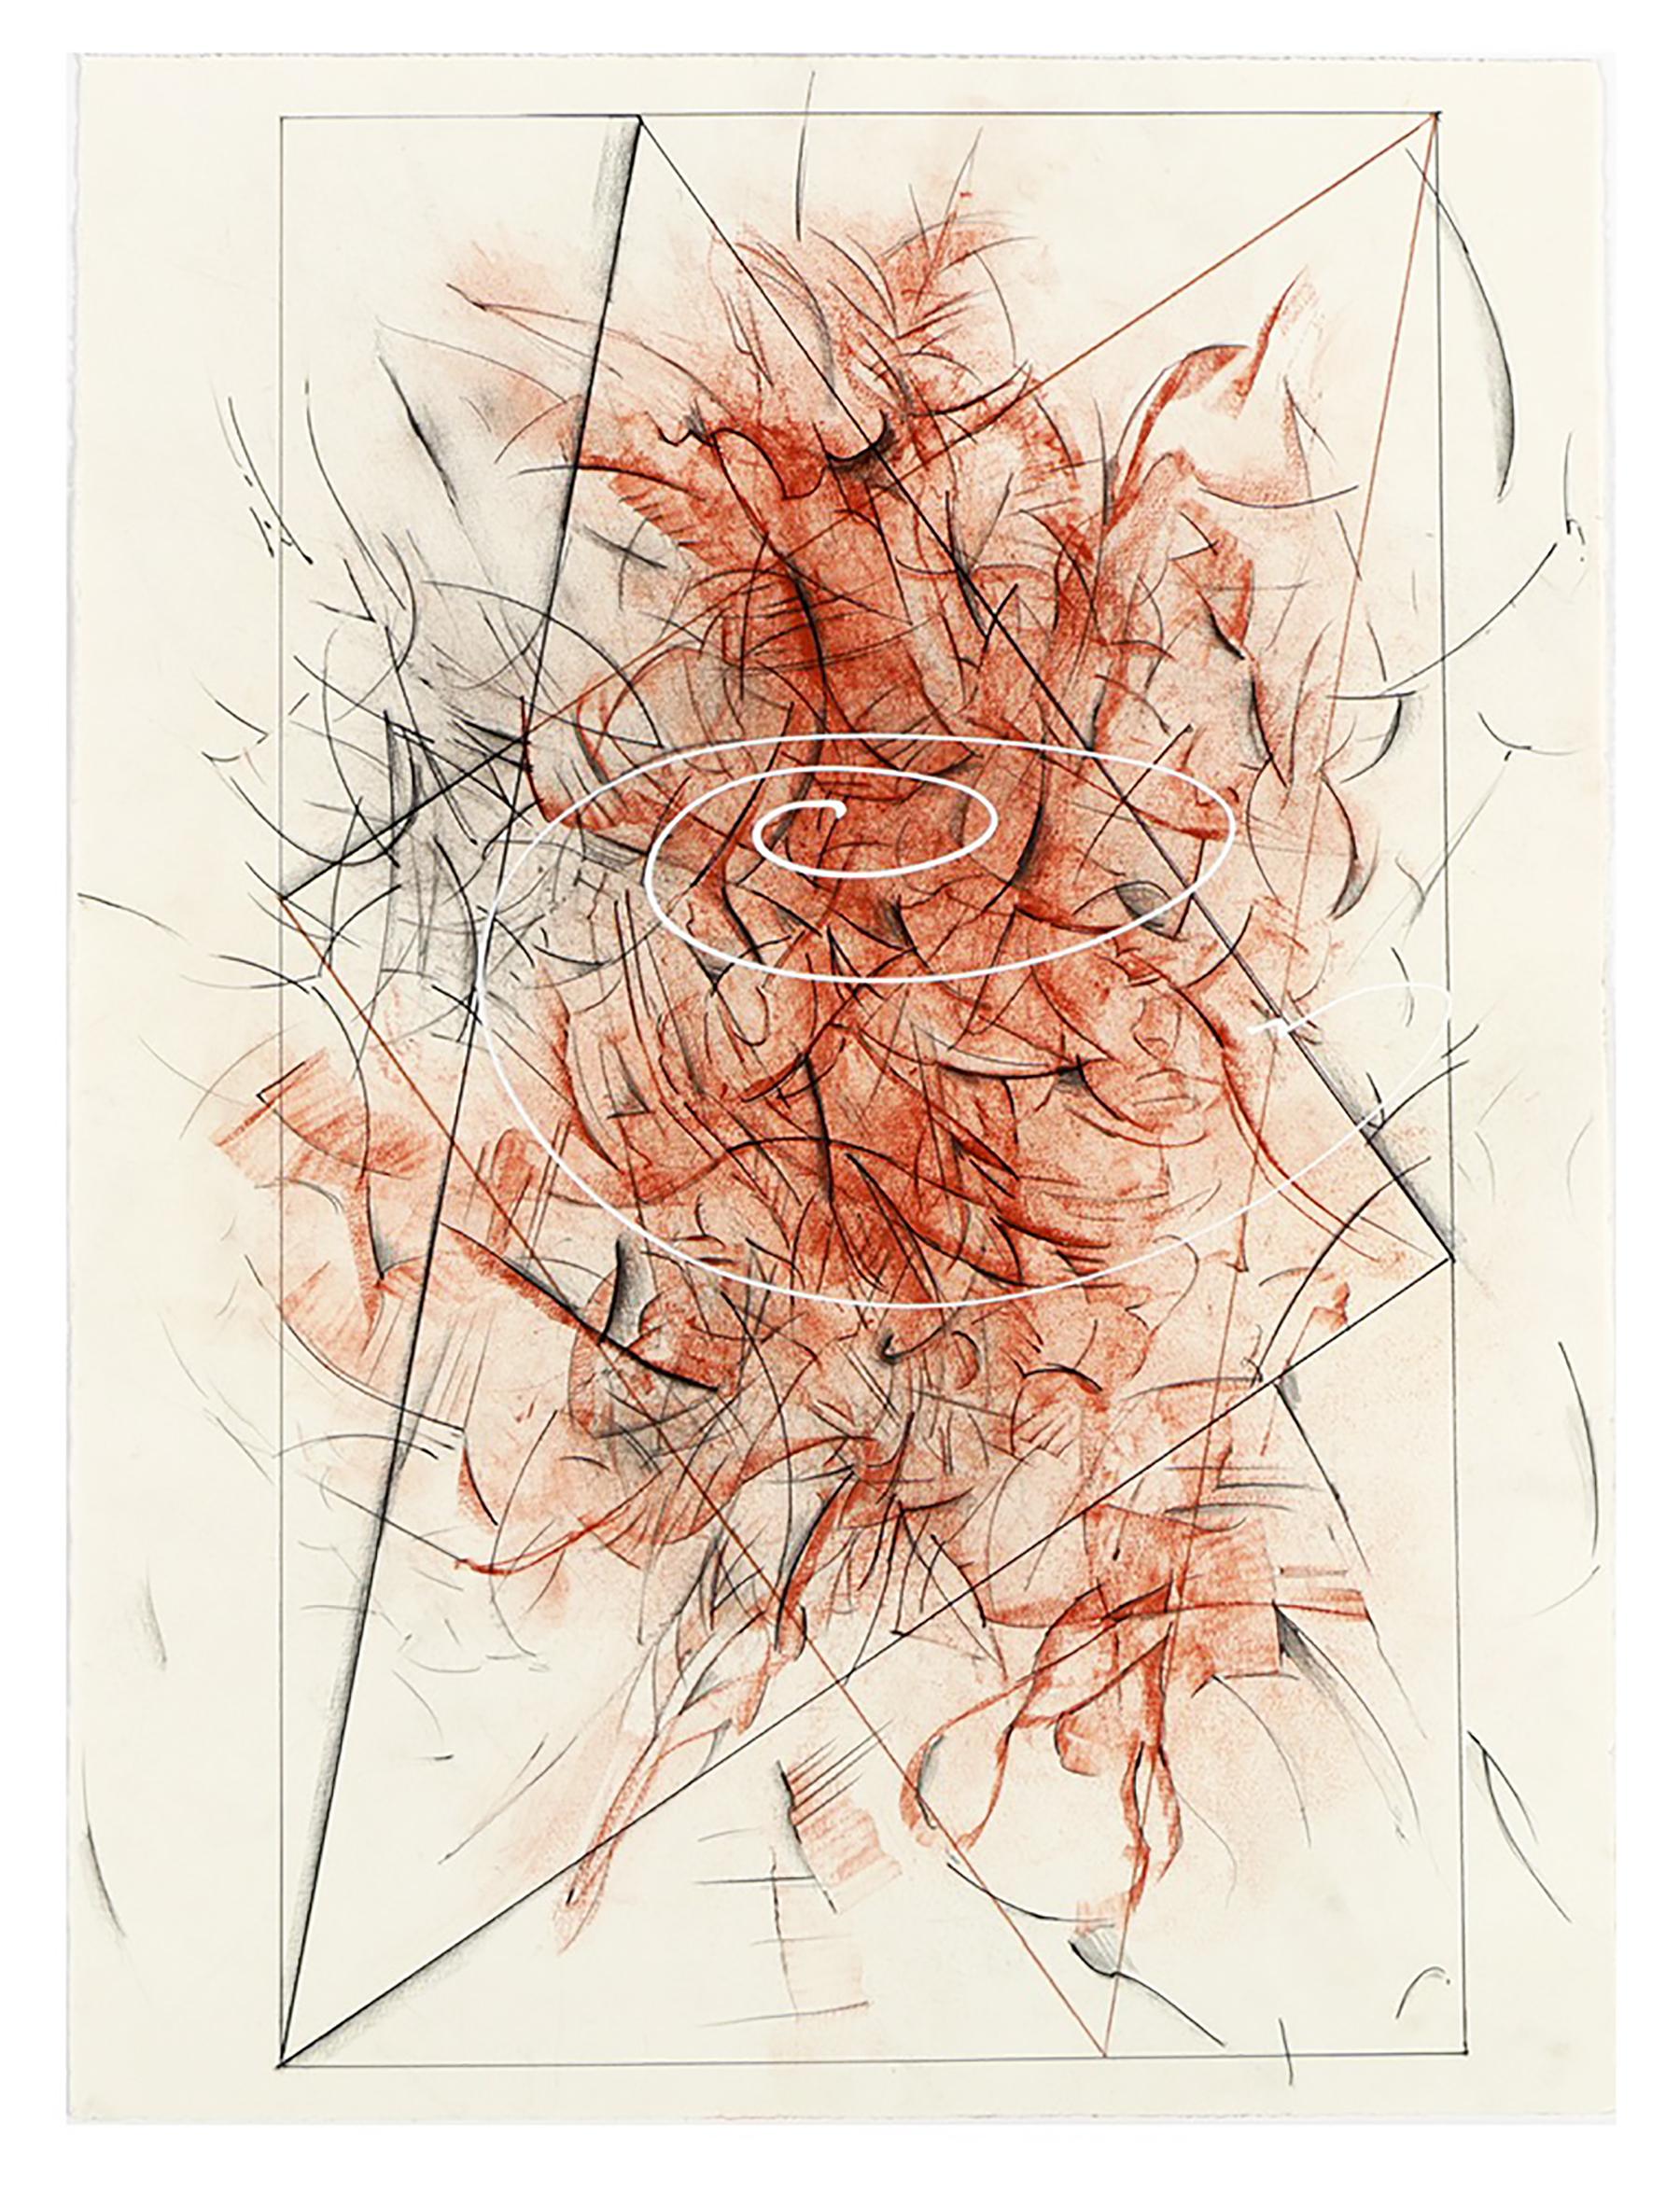 "Triangulation III", de l'artiste contemporain vénézuélien-américain Ricardo Morin, est un dessin abstrait en techniques mixtes réalisé en 2008 sur papier plat. L'œuvre, qui utilise du fusain, de la sanguine, du blanc et de l'encre de Chine, fait